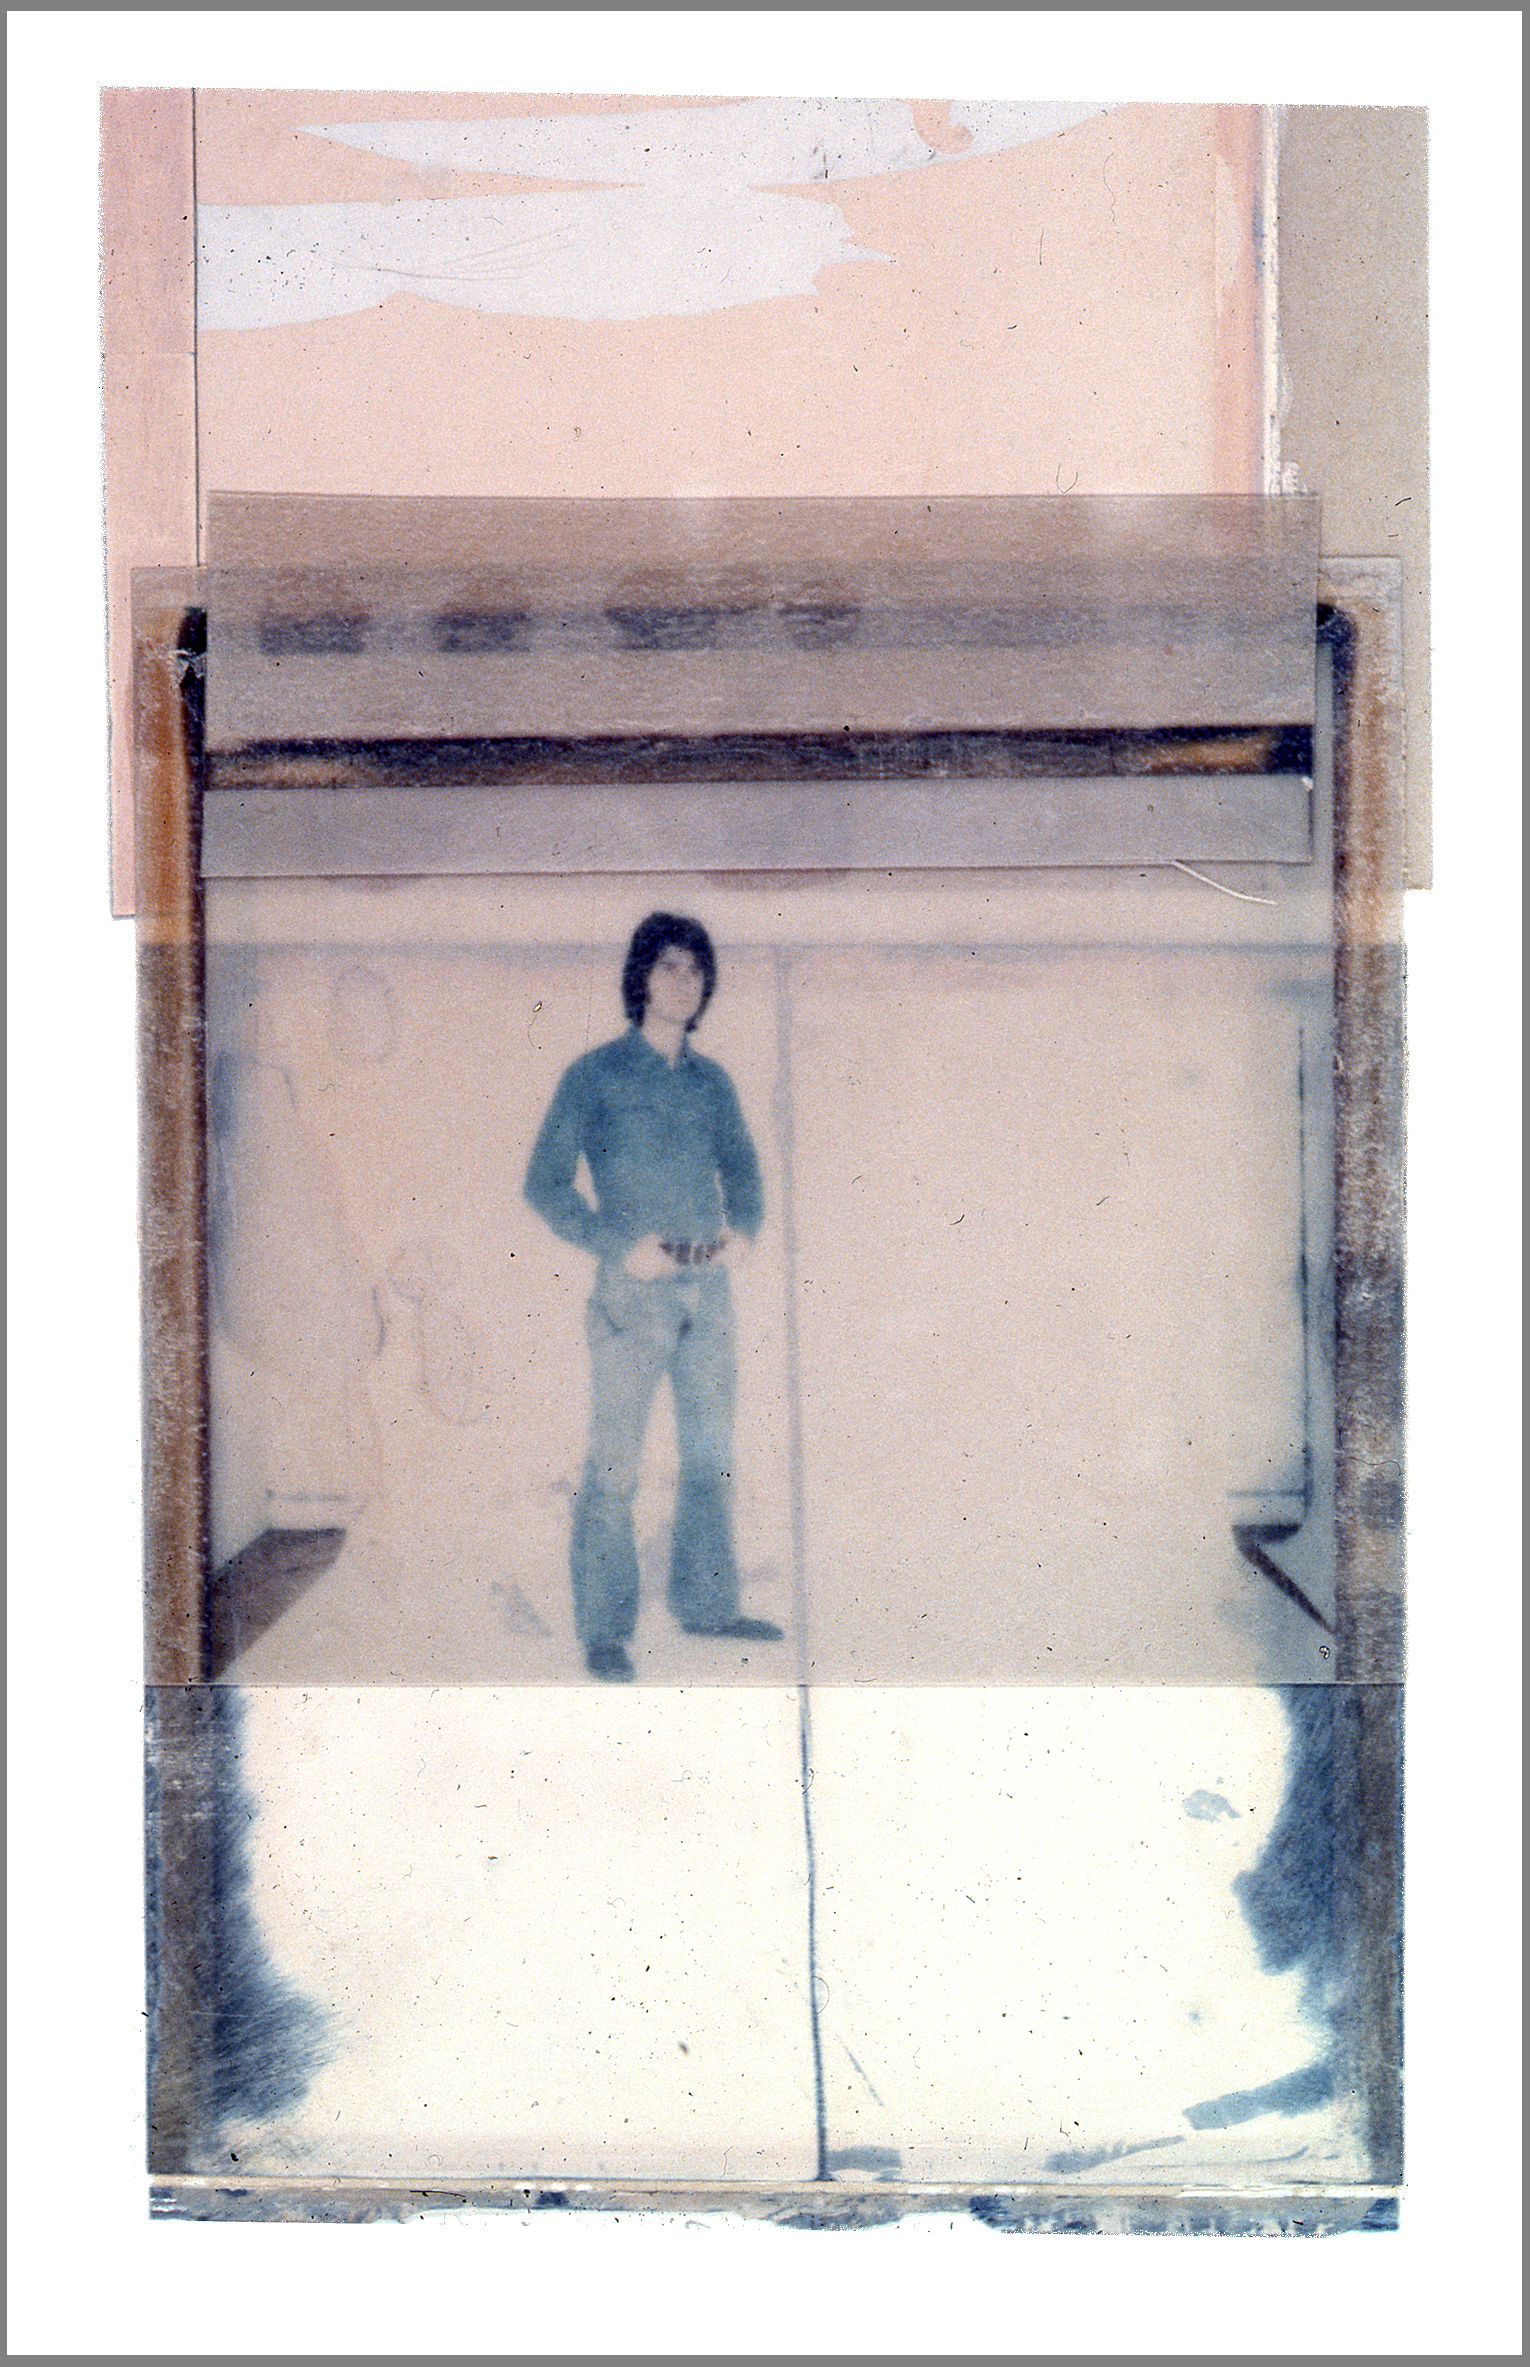  1975  Polaroid SX70 film and mixed media, 6x4" 